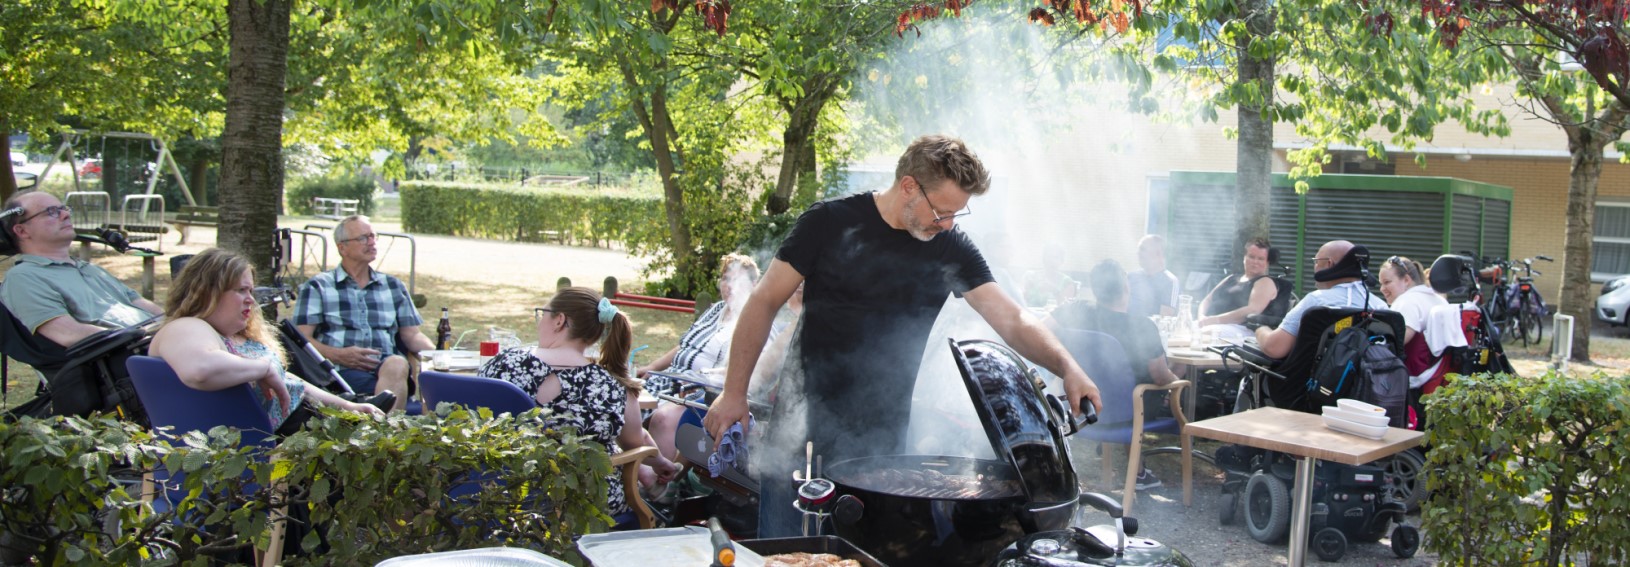 Barbecue Zonnebloem Jong Amsterdam met chef-kok Andy McDonald